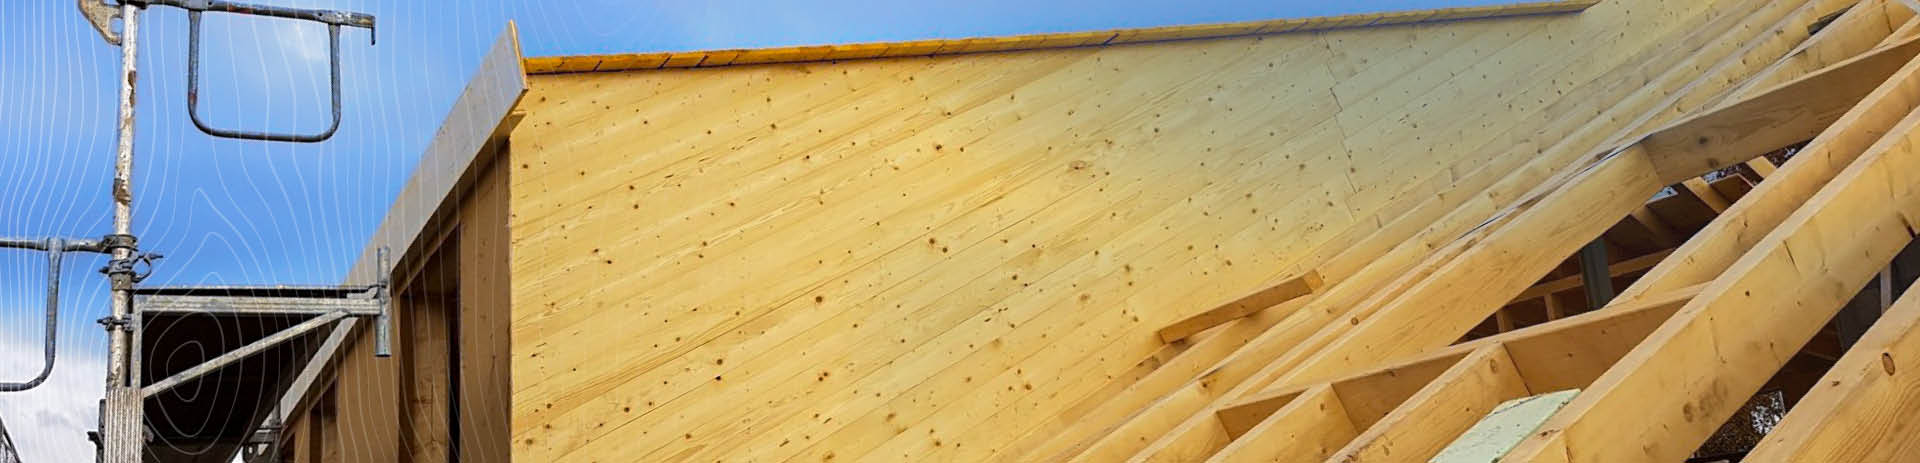 Schmickler Holzbau bietet Qualitativ hochwertige Holzkonstruktionen